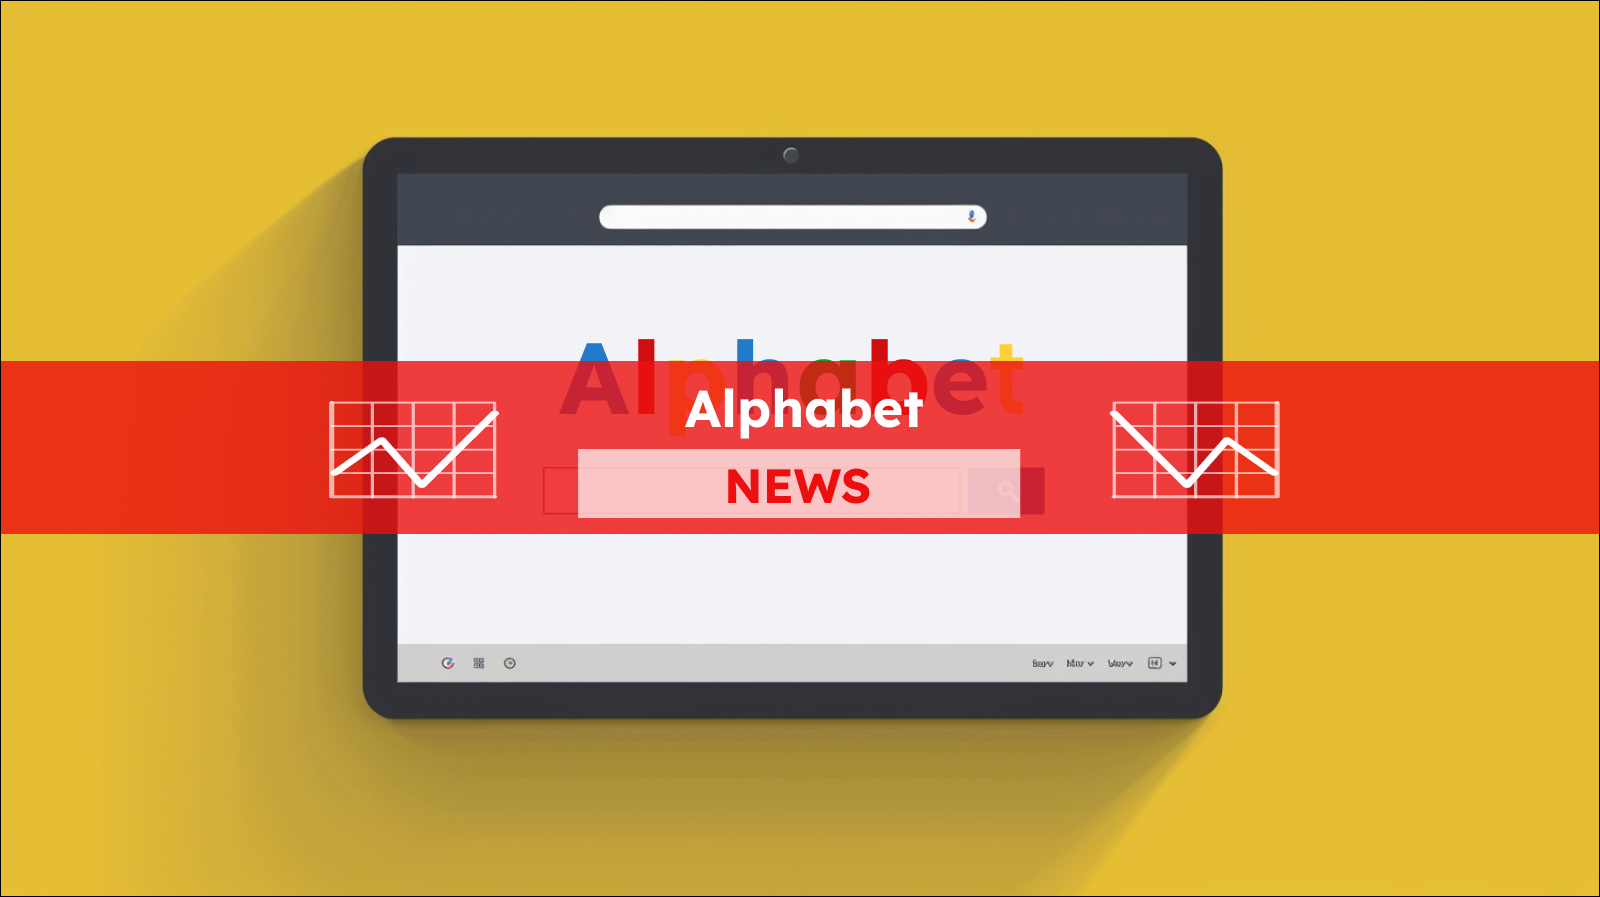 ein Webbrowser-Fenster, das das Wort Alphabet im Google-Farbschema anzeigt, mit einer Suchleiste,  mit einem Alphabet NEWS Banner